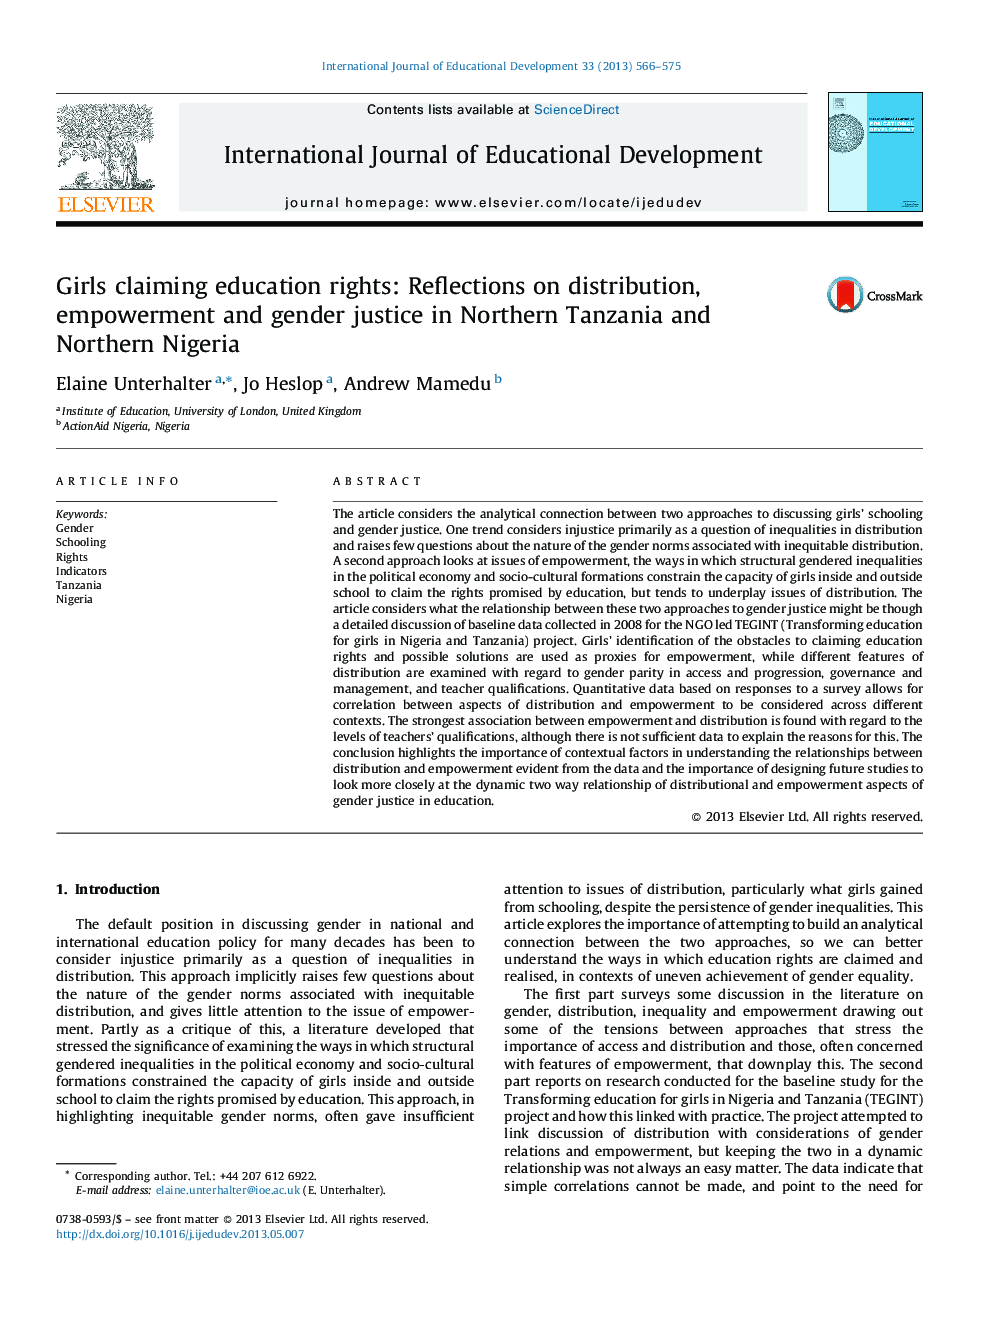 دختران مدعی حقوق آموزش و پرورش: تأملاتی در توزیع، توانمندسازی و عدالت جنسیتی در شمال تانزانیا و شمال نیجریه